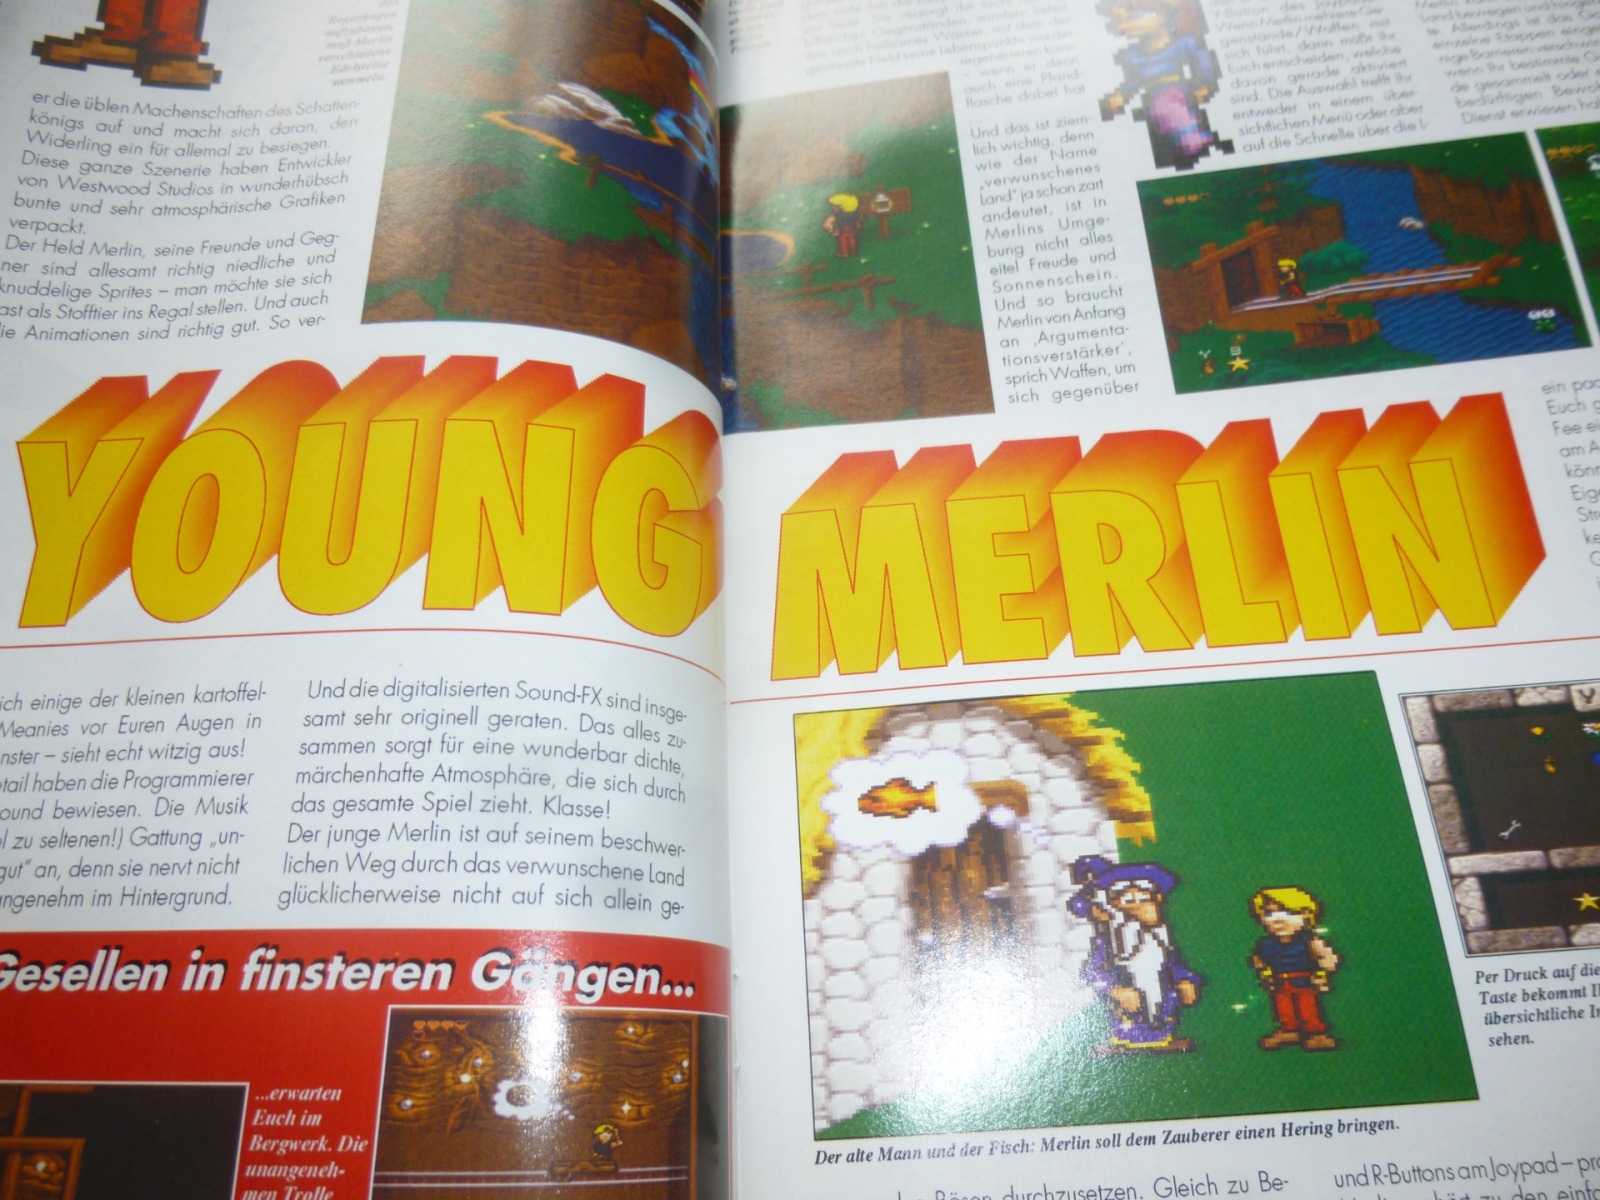 TOTAL Das unabhängige Magazin - 100% Nintendo - Ausgabe 10/93 1993 15